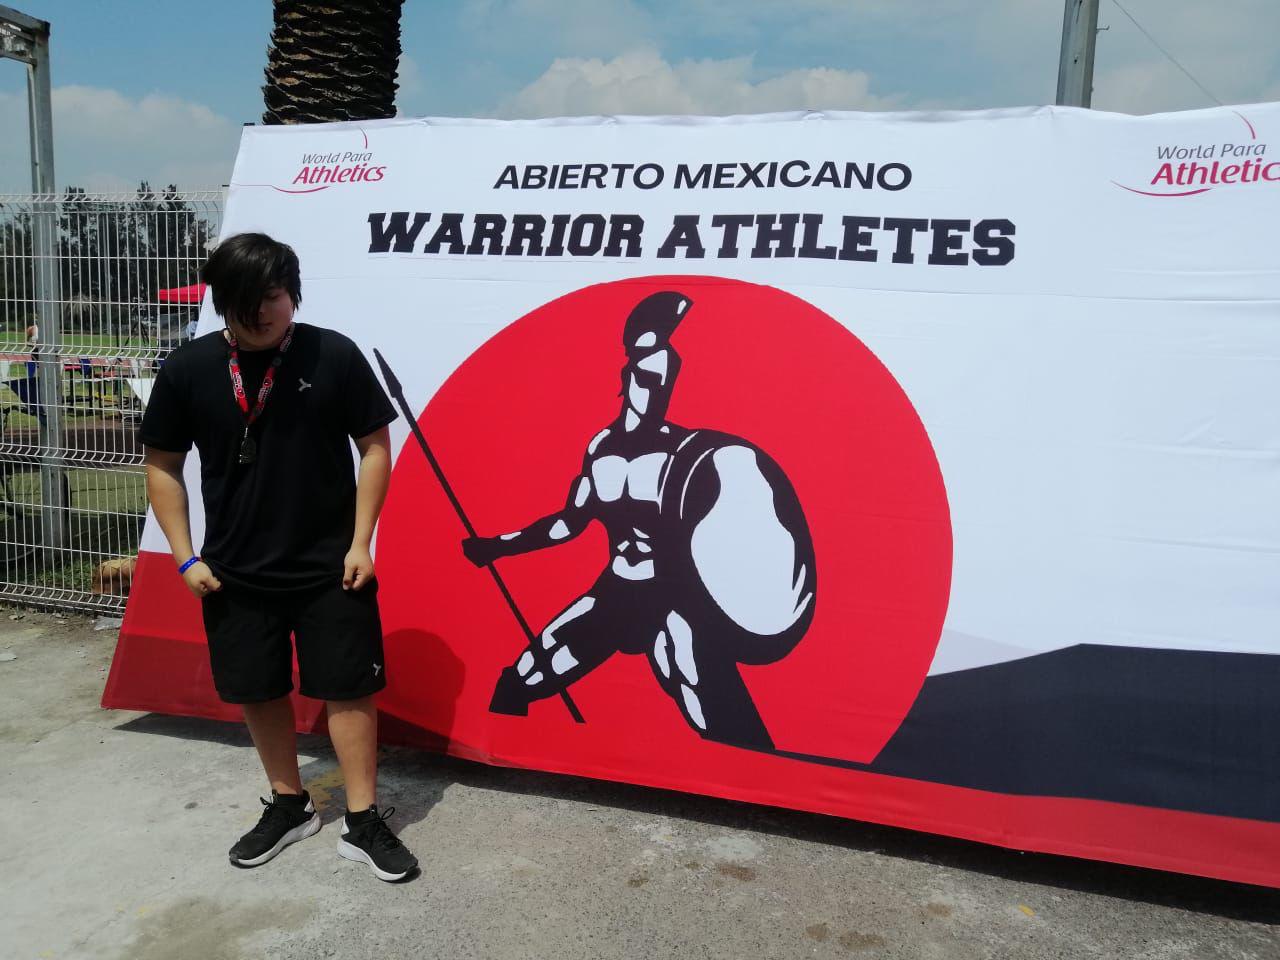 $!Mazatlecos inician cosecha de medallas en Abierto Warriors de Para Atletismo